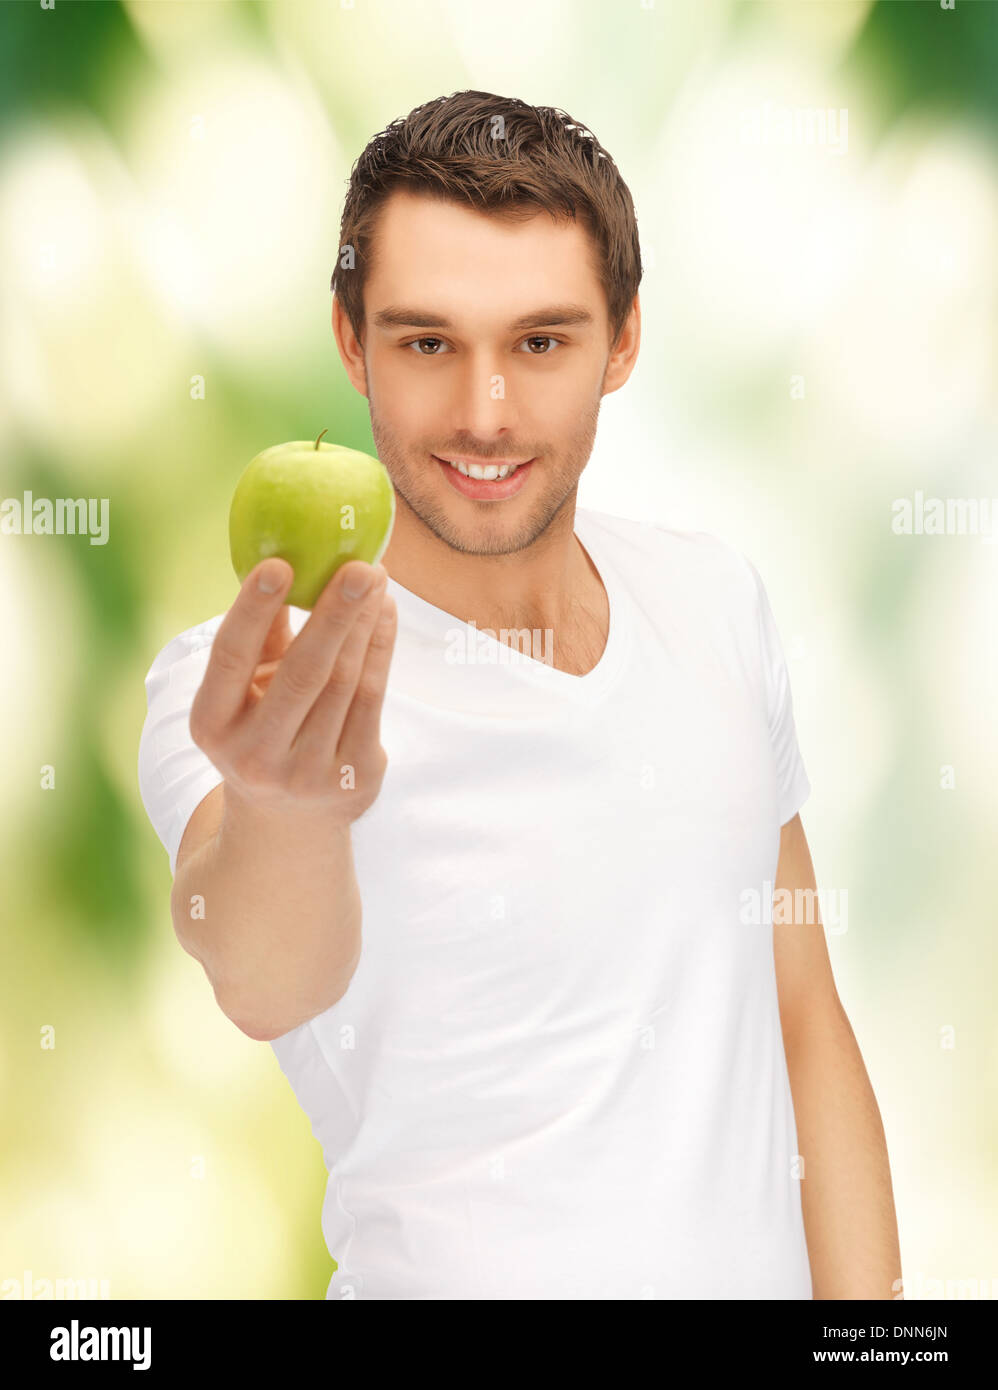 Кидает яблоко. Белоснежная улыбка с яблоком. Парень кидает яблоко. Кидаются яблоками.